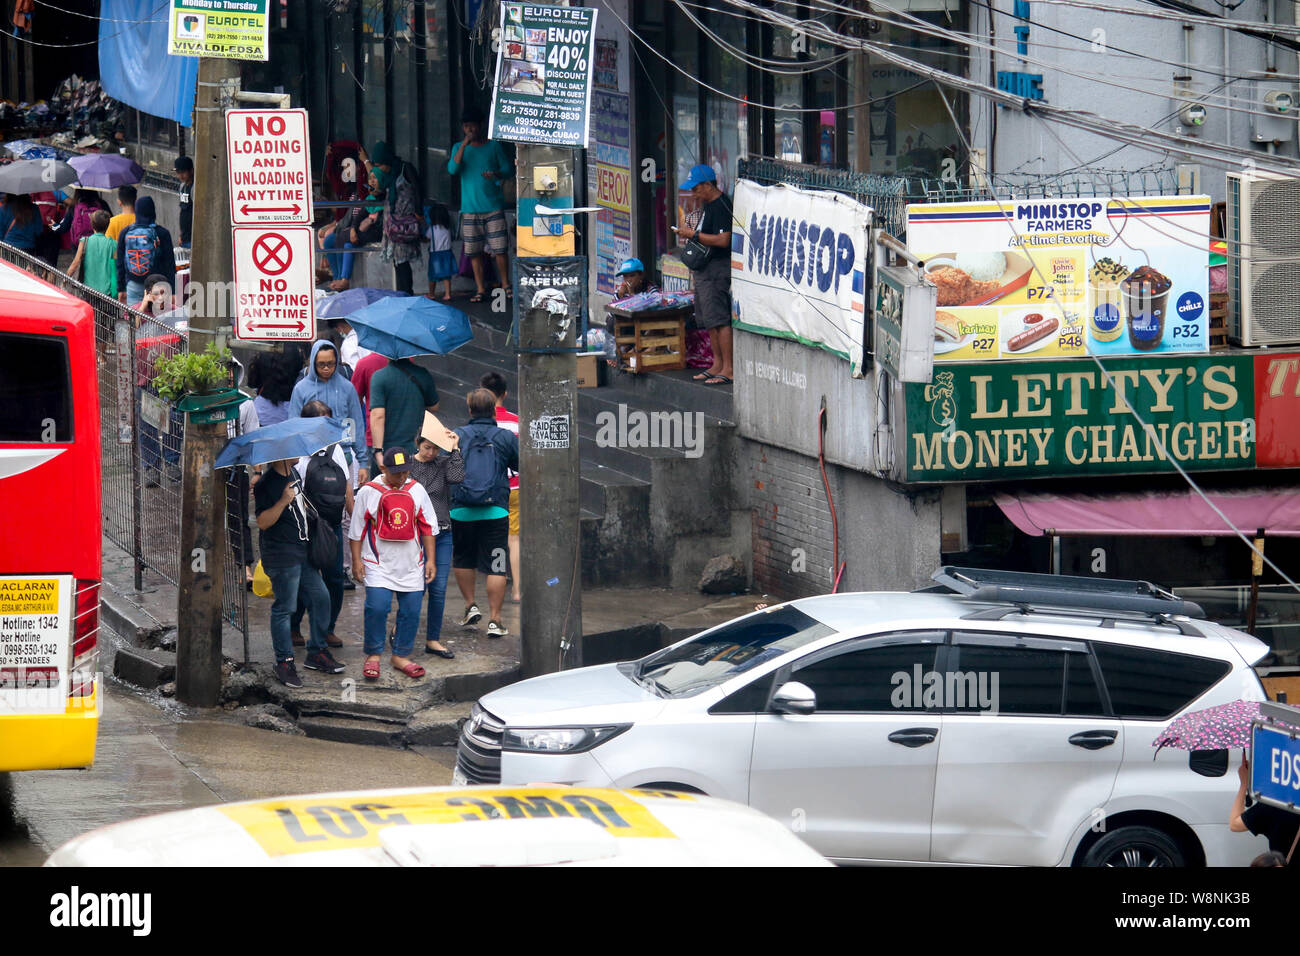 Quezon City, Philippinen. 09 Aug, 2019. Die Menschen halten es Sonnenschirme beim Gehen auf der Straße auf eine moderate Regen und Wind. Um 3:00 PM heute, das Auge des Taifuns "Hanna" wurde auf der Grundlage aller verfügbaren Daten bei ° 505 km nordöstlich von Basco, Batanes mit maximal unterstützte Winde von 185 km/h in der Nähe des Zentrums und gustiness von bis zu 230 km/h. HANNA" wird erwartet, dass die Philippinische Verantwortungsbereich (PAR) Ausfahrt zwischen 11:30 Uhr heute abend und 2:00 Uhr morgen. (Foto von Ismael Michael Dula/Pacific Press) Quelle: Pacific Press Agency/Alamy leben Nachrichten Stockfoto